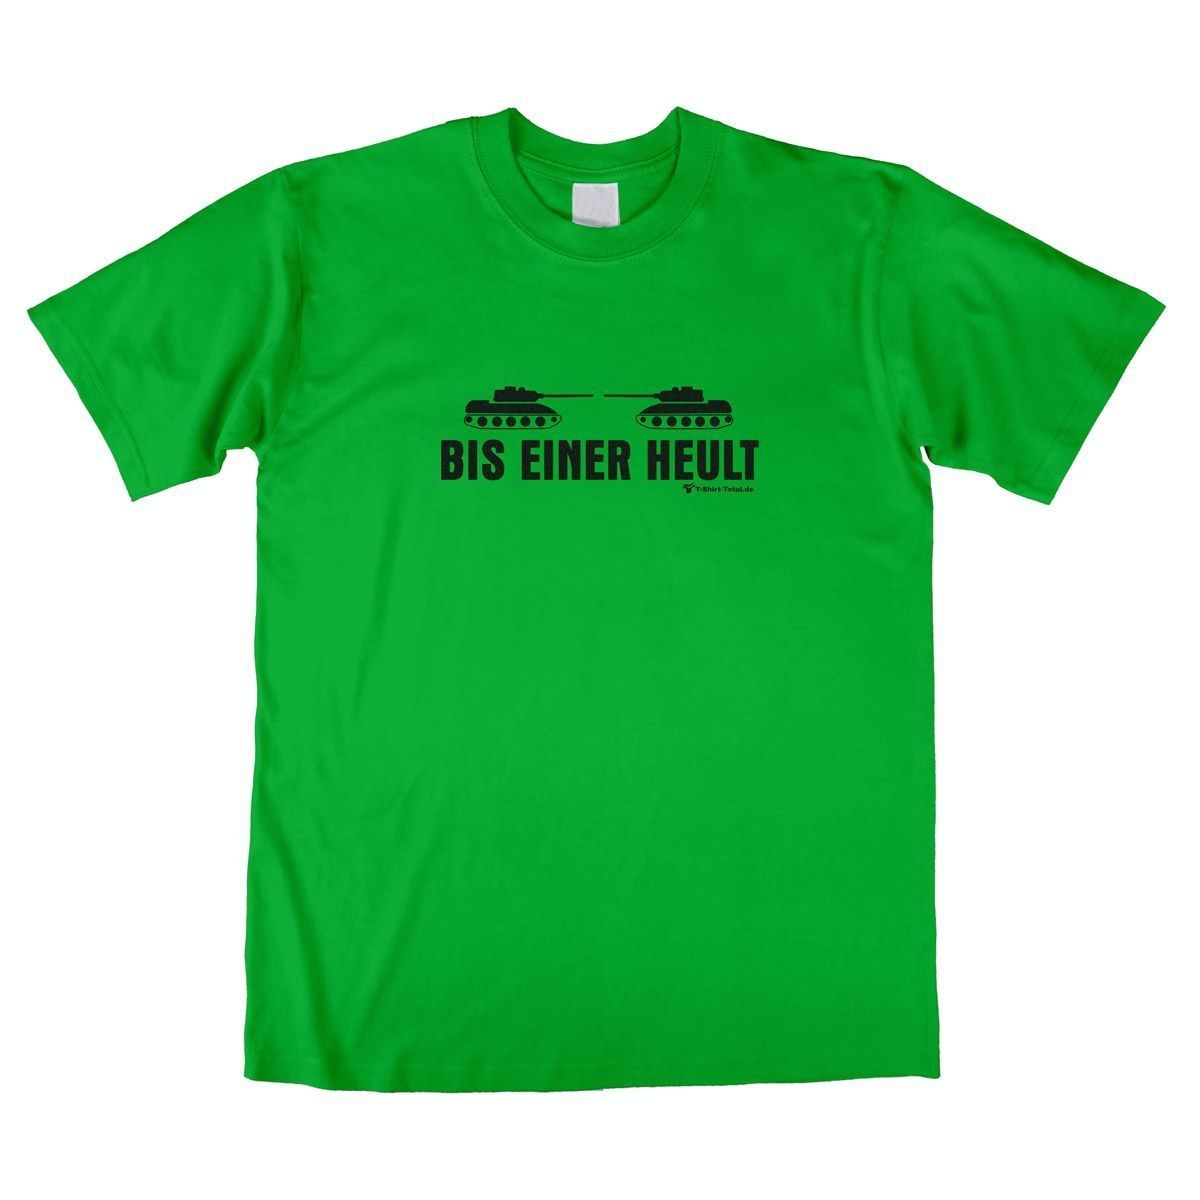 Bis einer heult Unisex T-Shirt grün Small